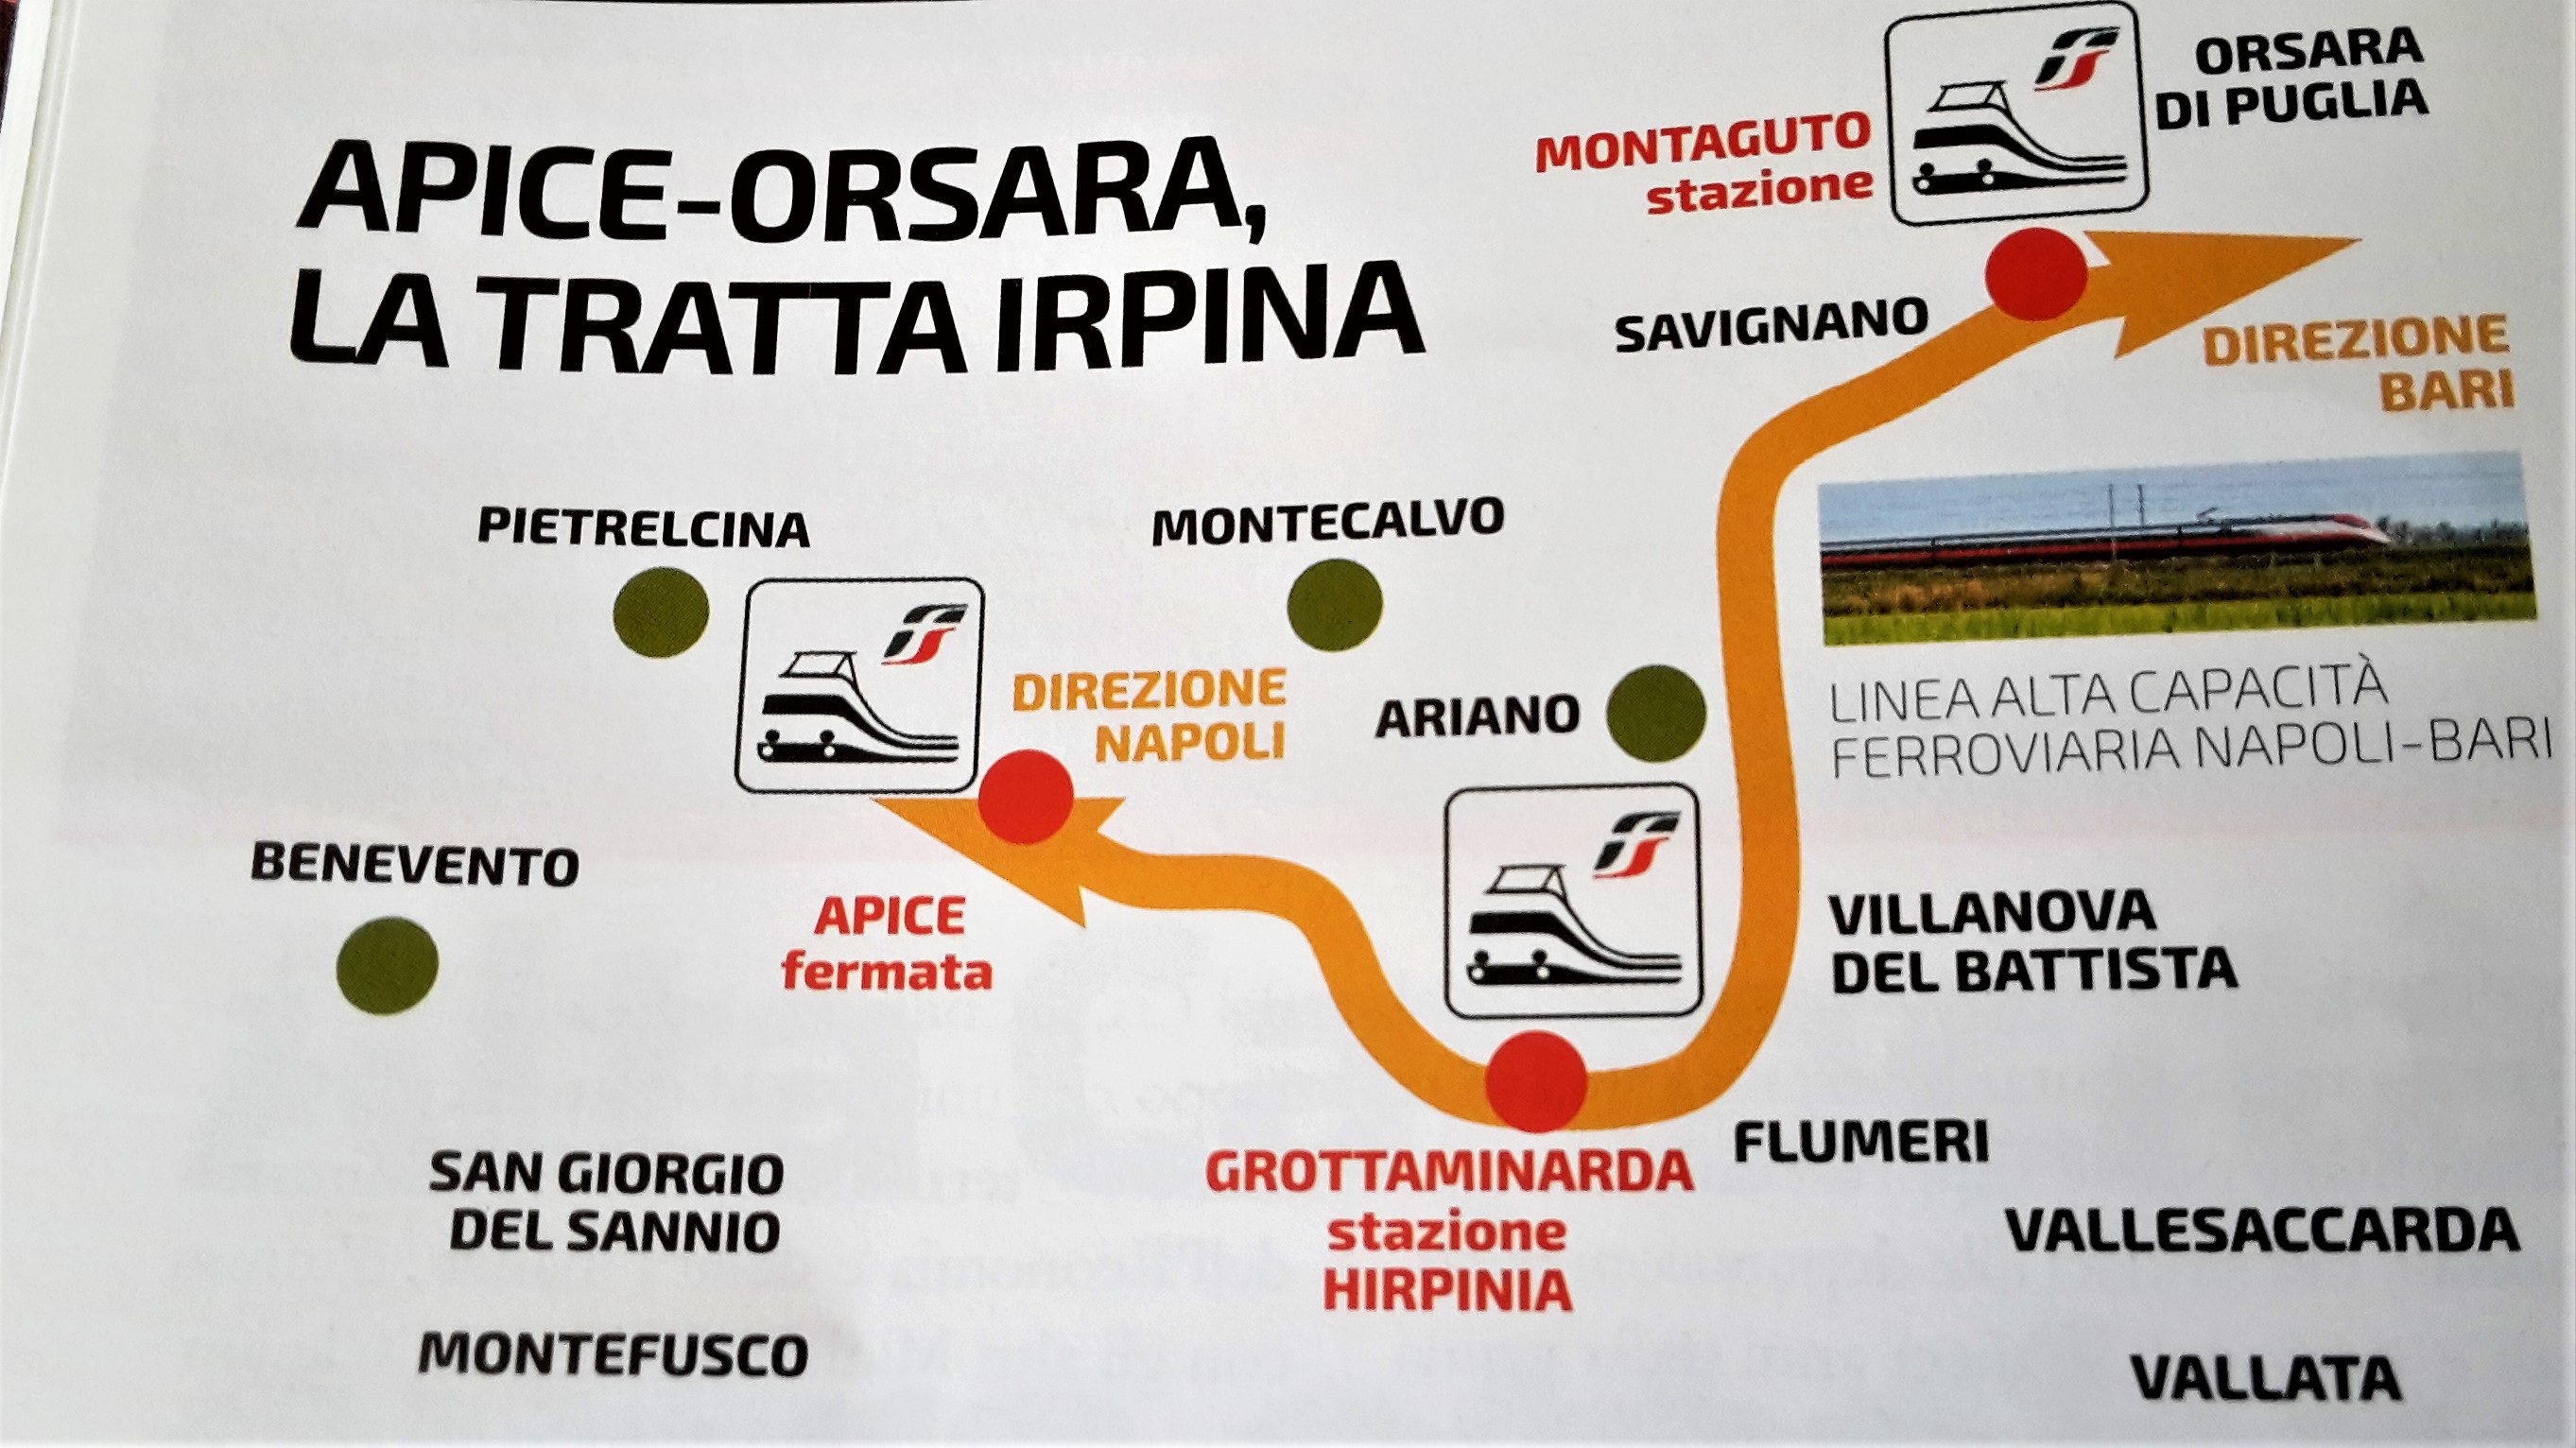 Grottaminarda|Stralcio Stazione Hirpinia, Napolitano: tornare indietro un errore fatale